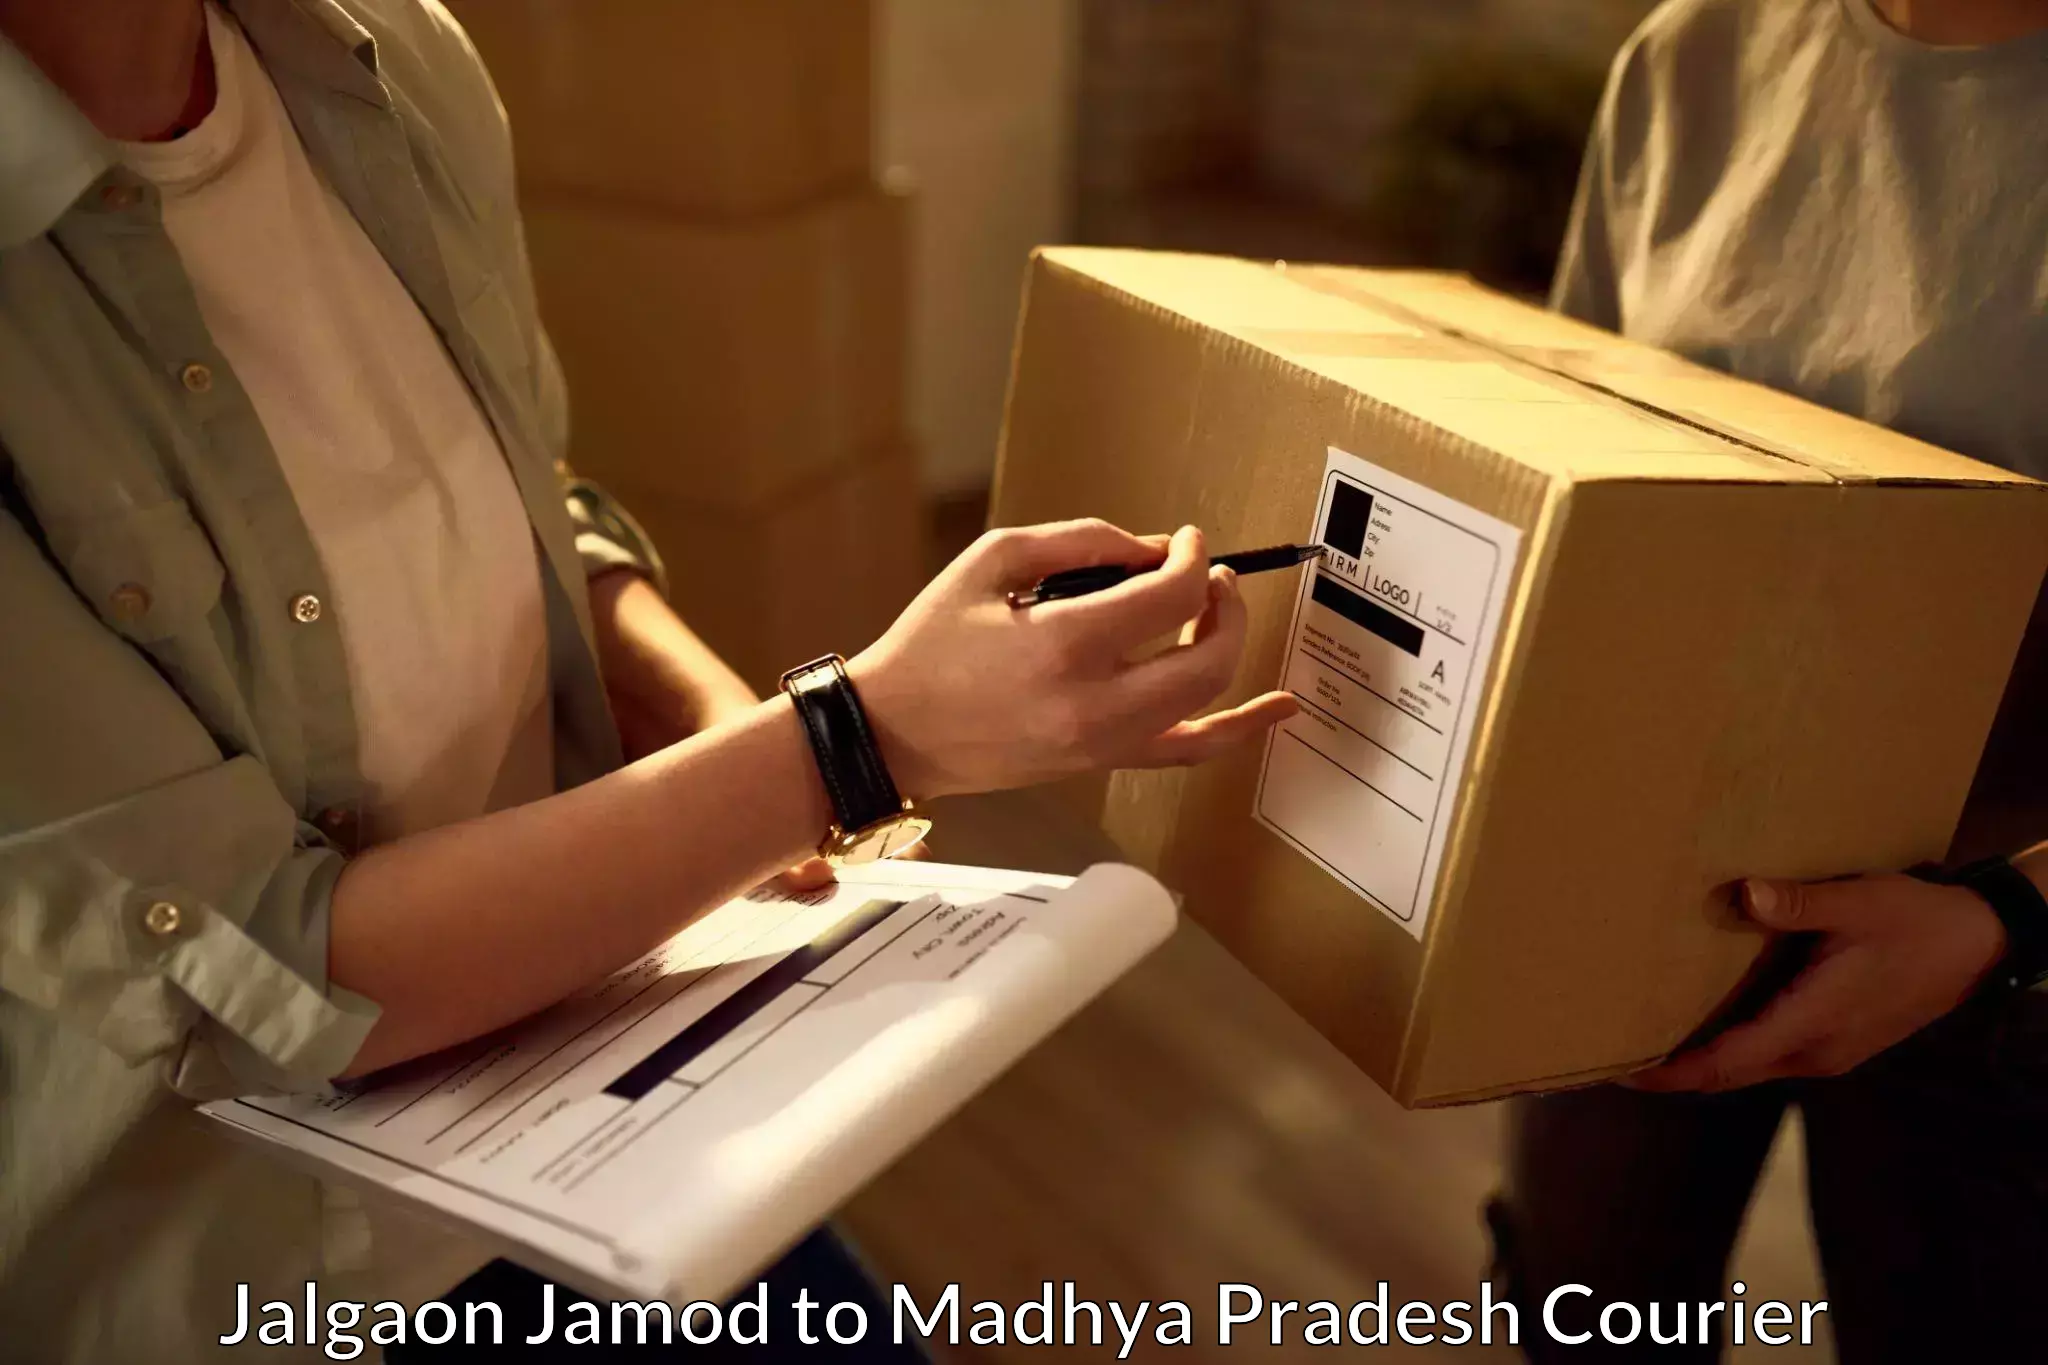 Pharmaceutical courier Jalgaon Jamod to Ujjain